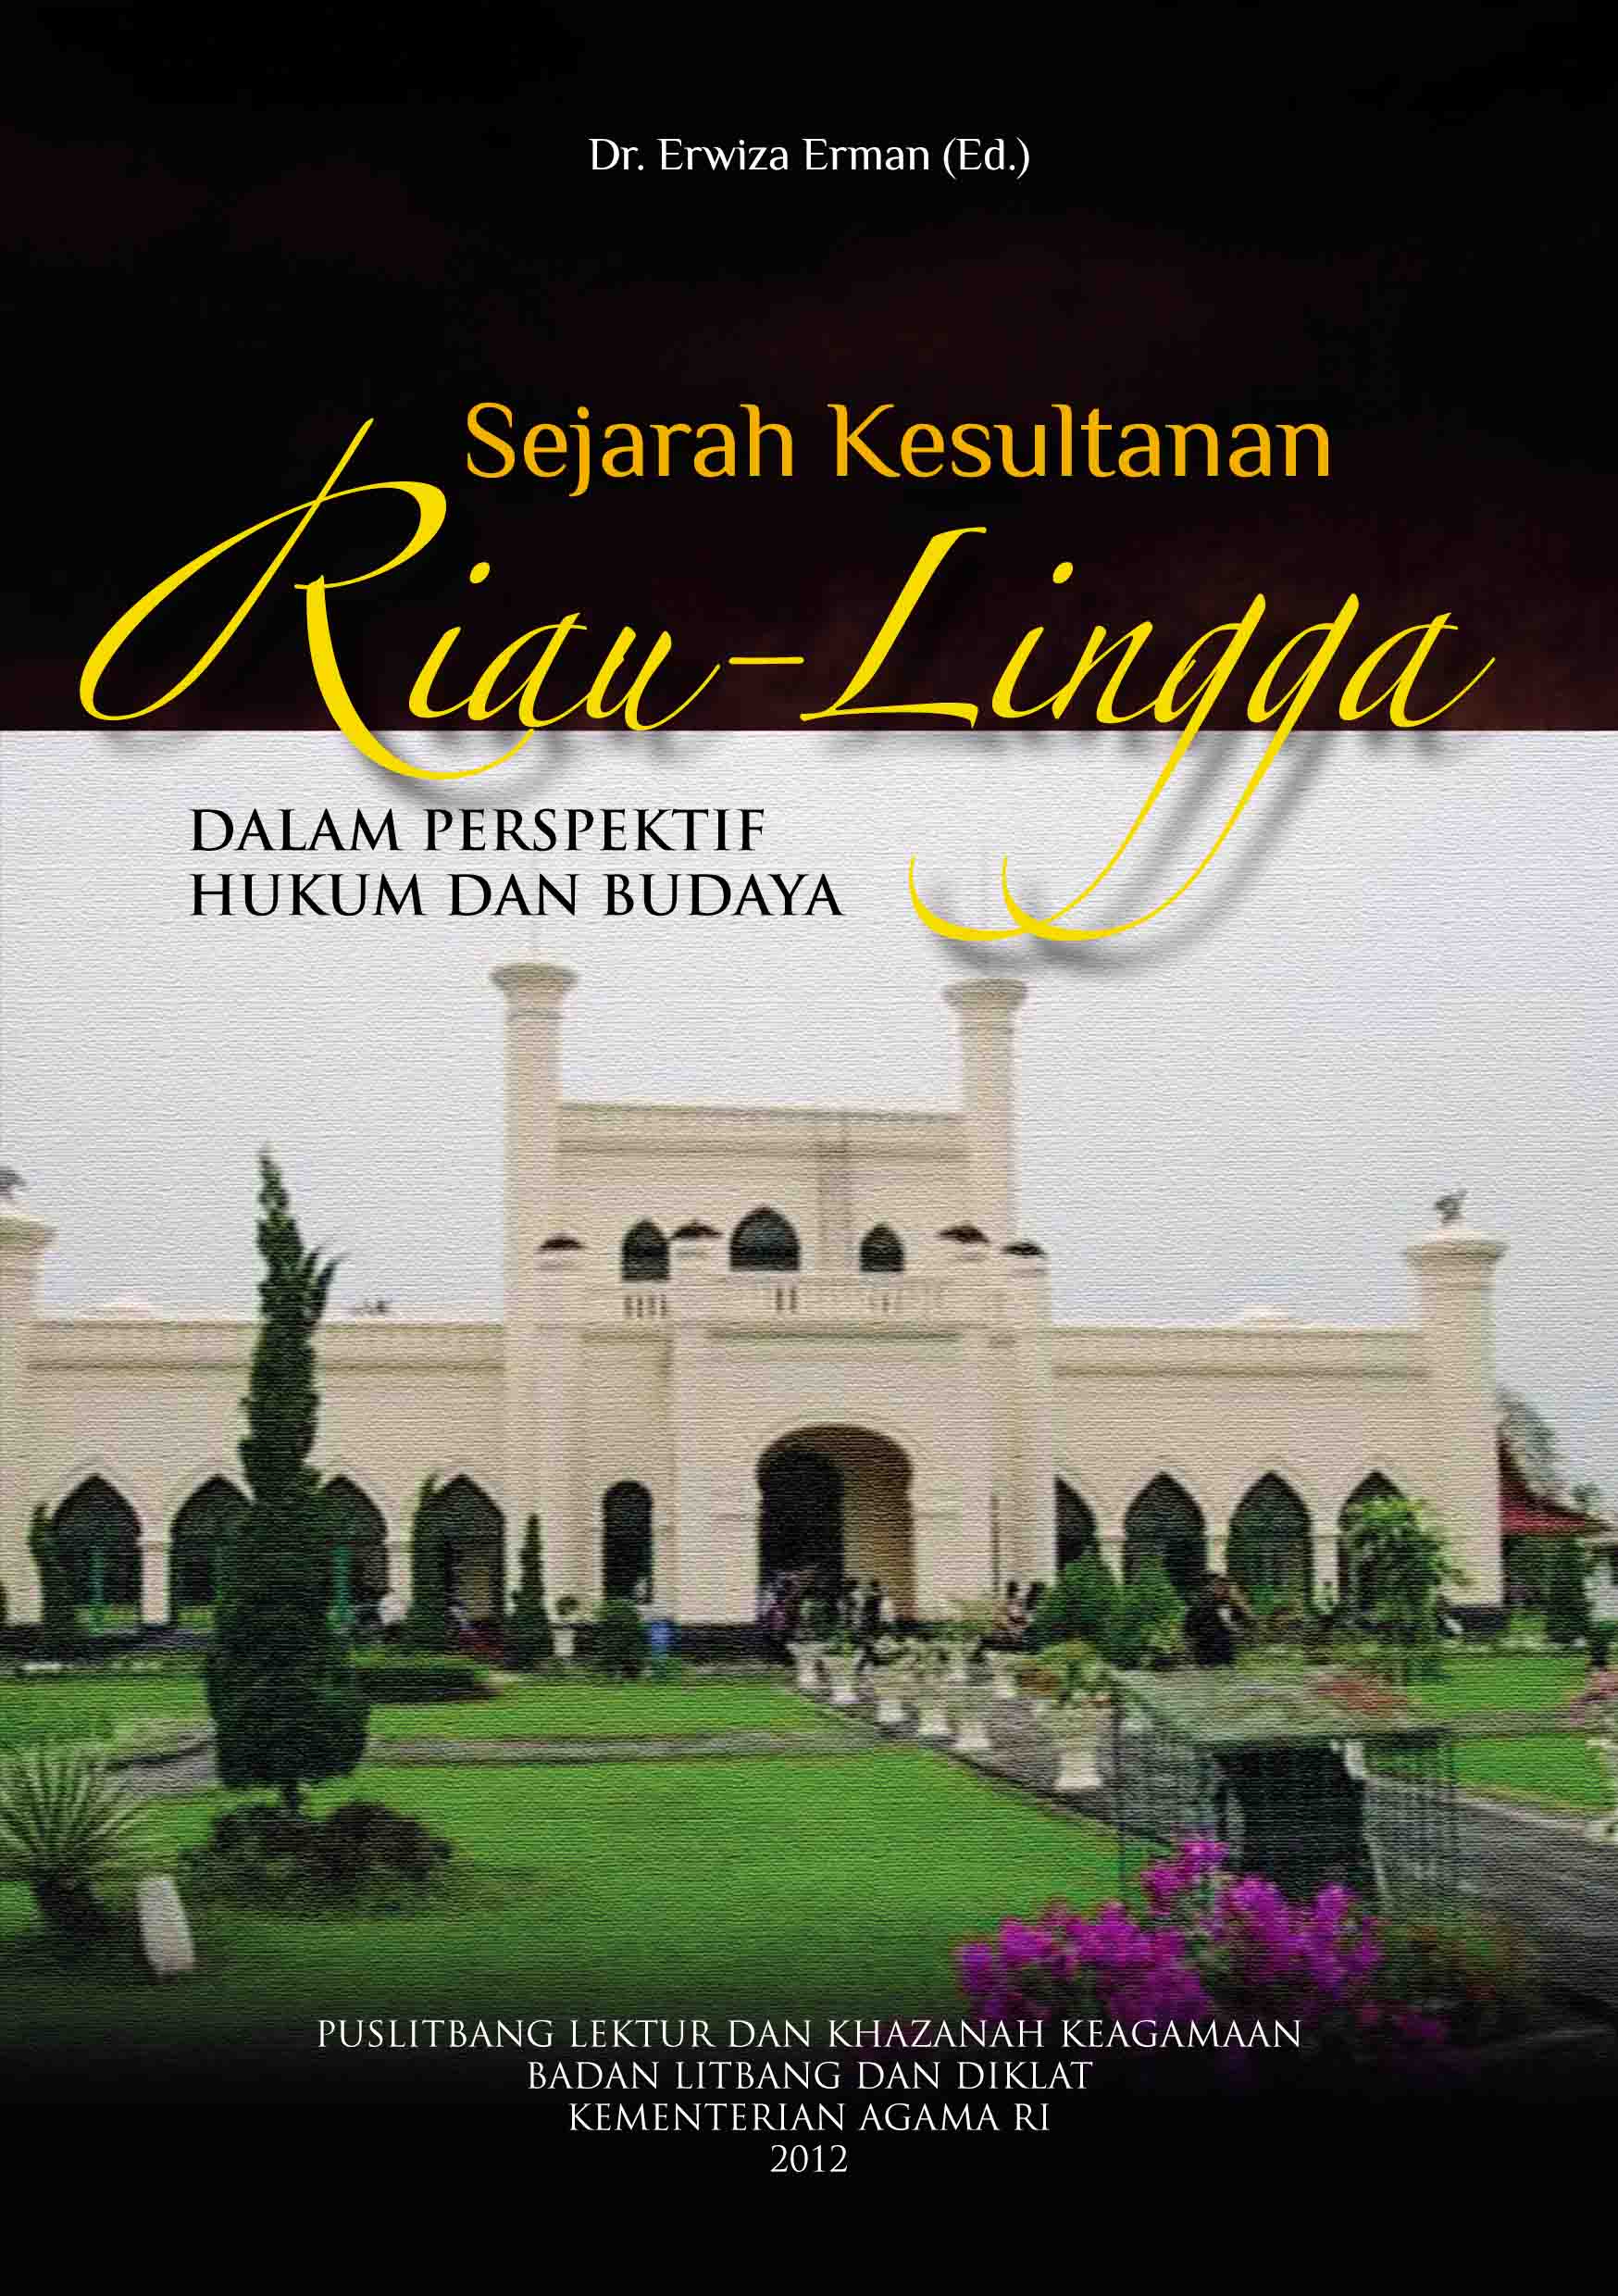 Sejarah Kesultanan Riau Lingga dalam Perspektif Hukum dan Budaya   